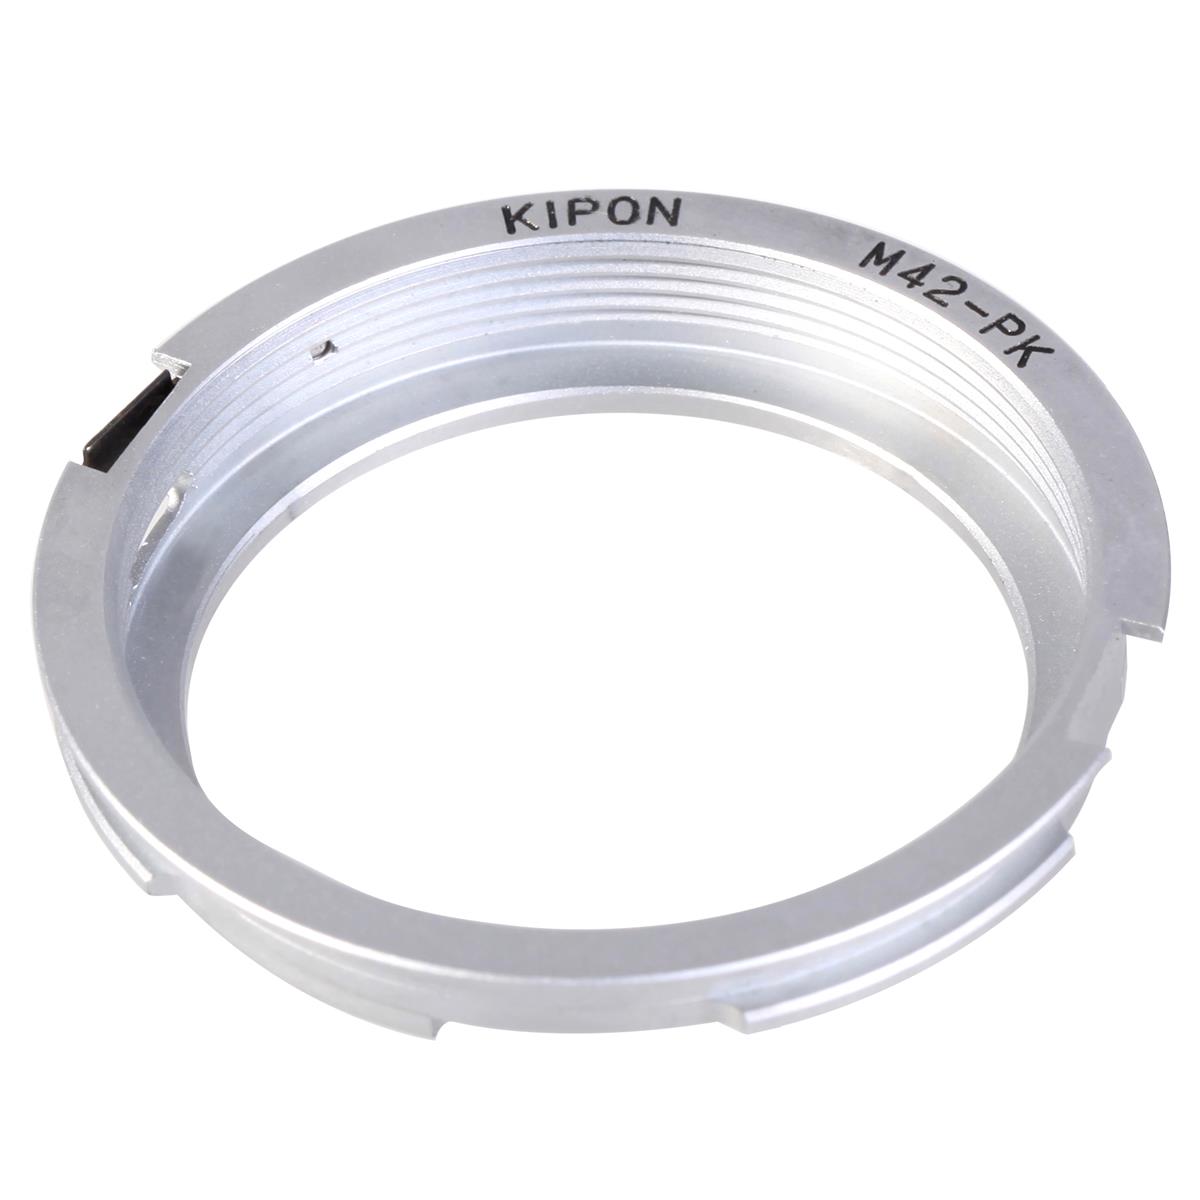 Image of Kipon Pentax M42 Screw Mount Lens to Pentax K Camera Lens Adapter